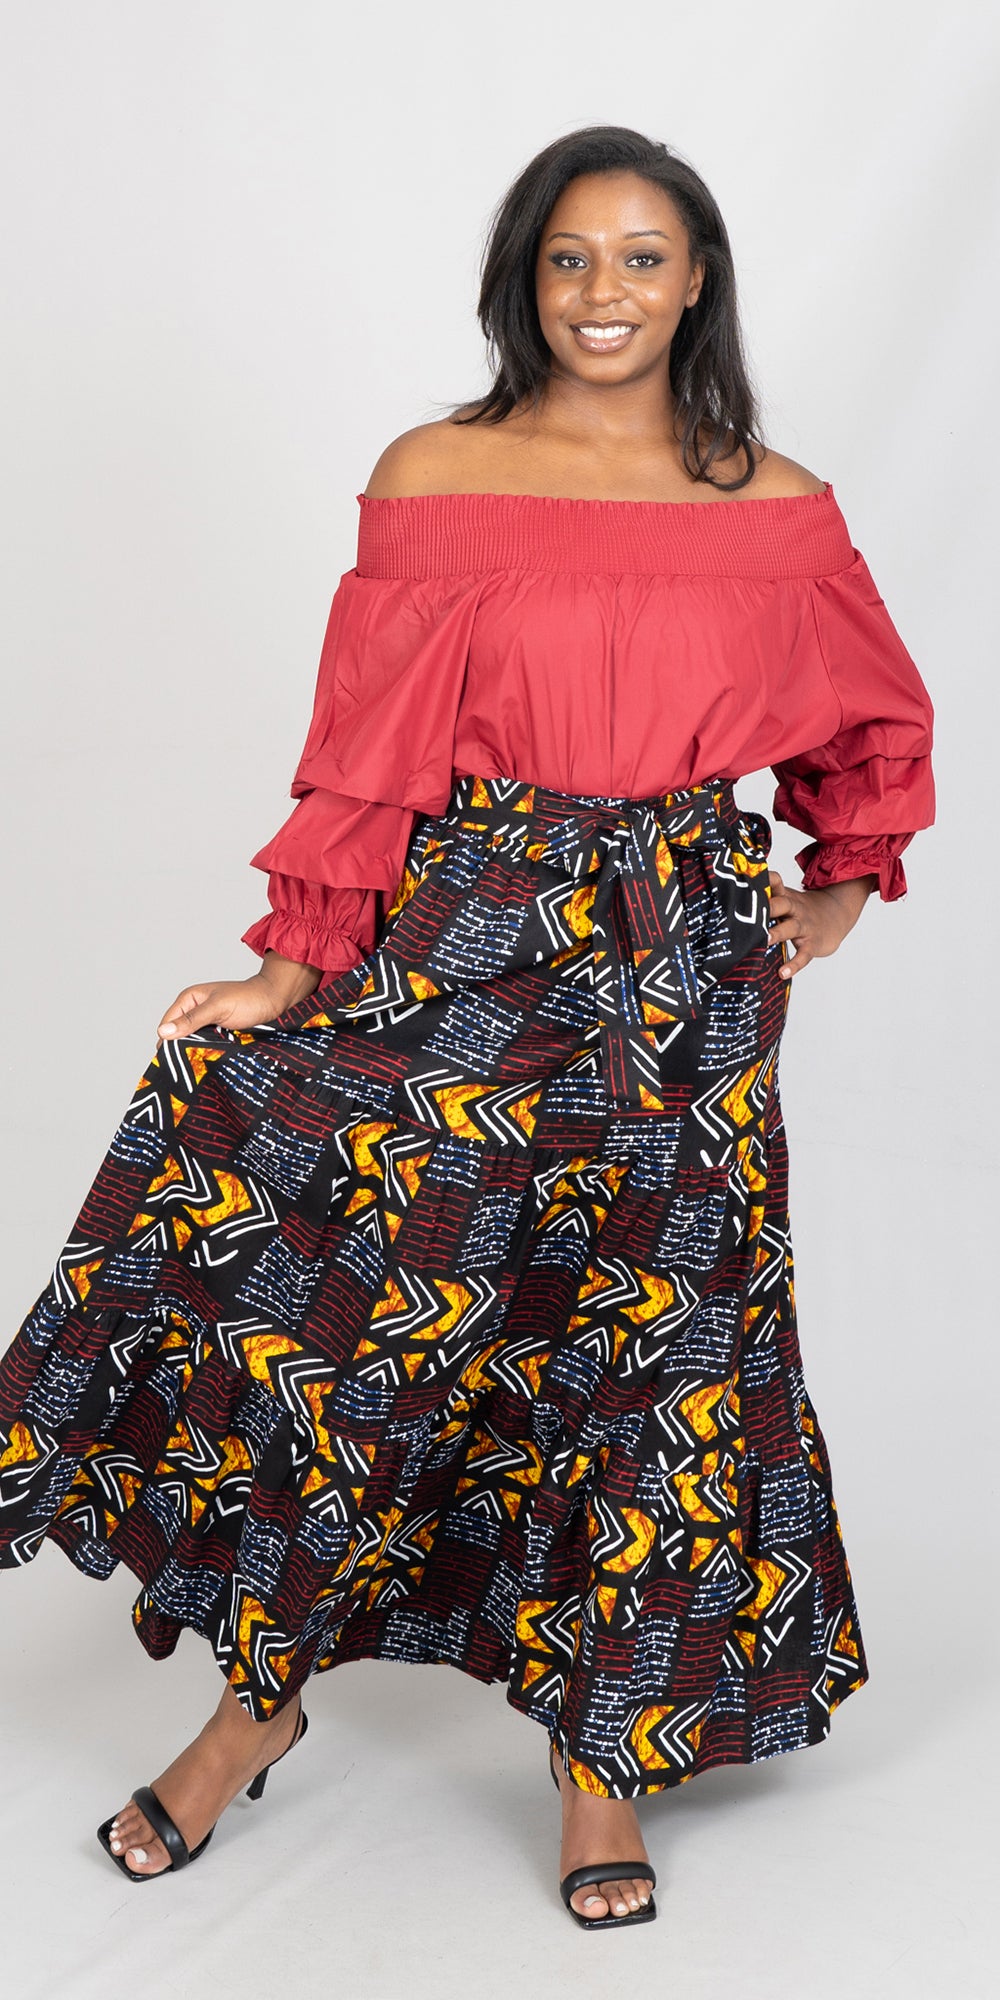 KaraChic 7778-601 - African Print Maxi Skirt